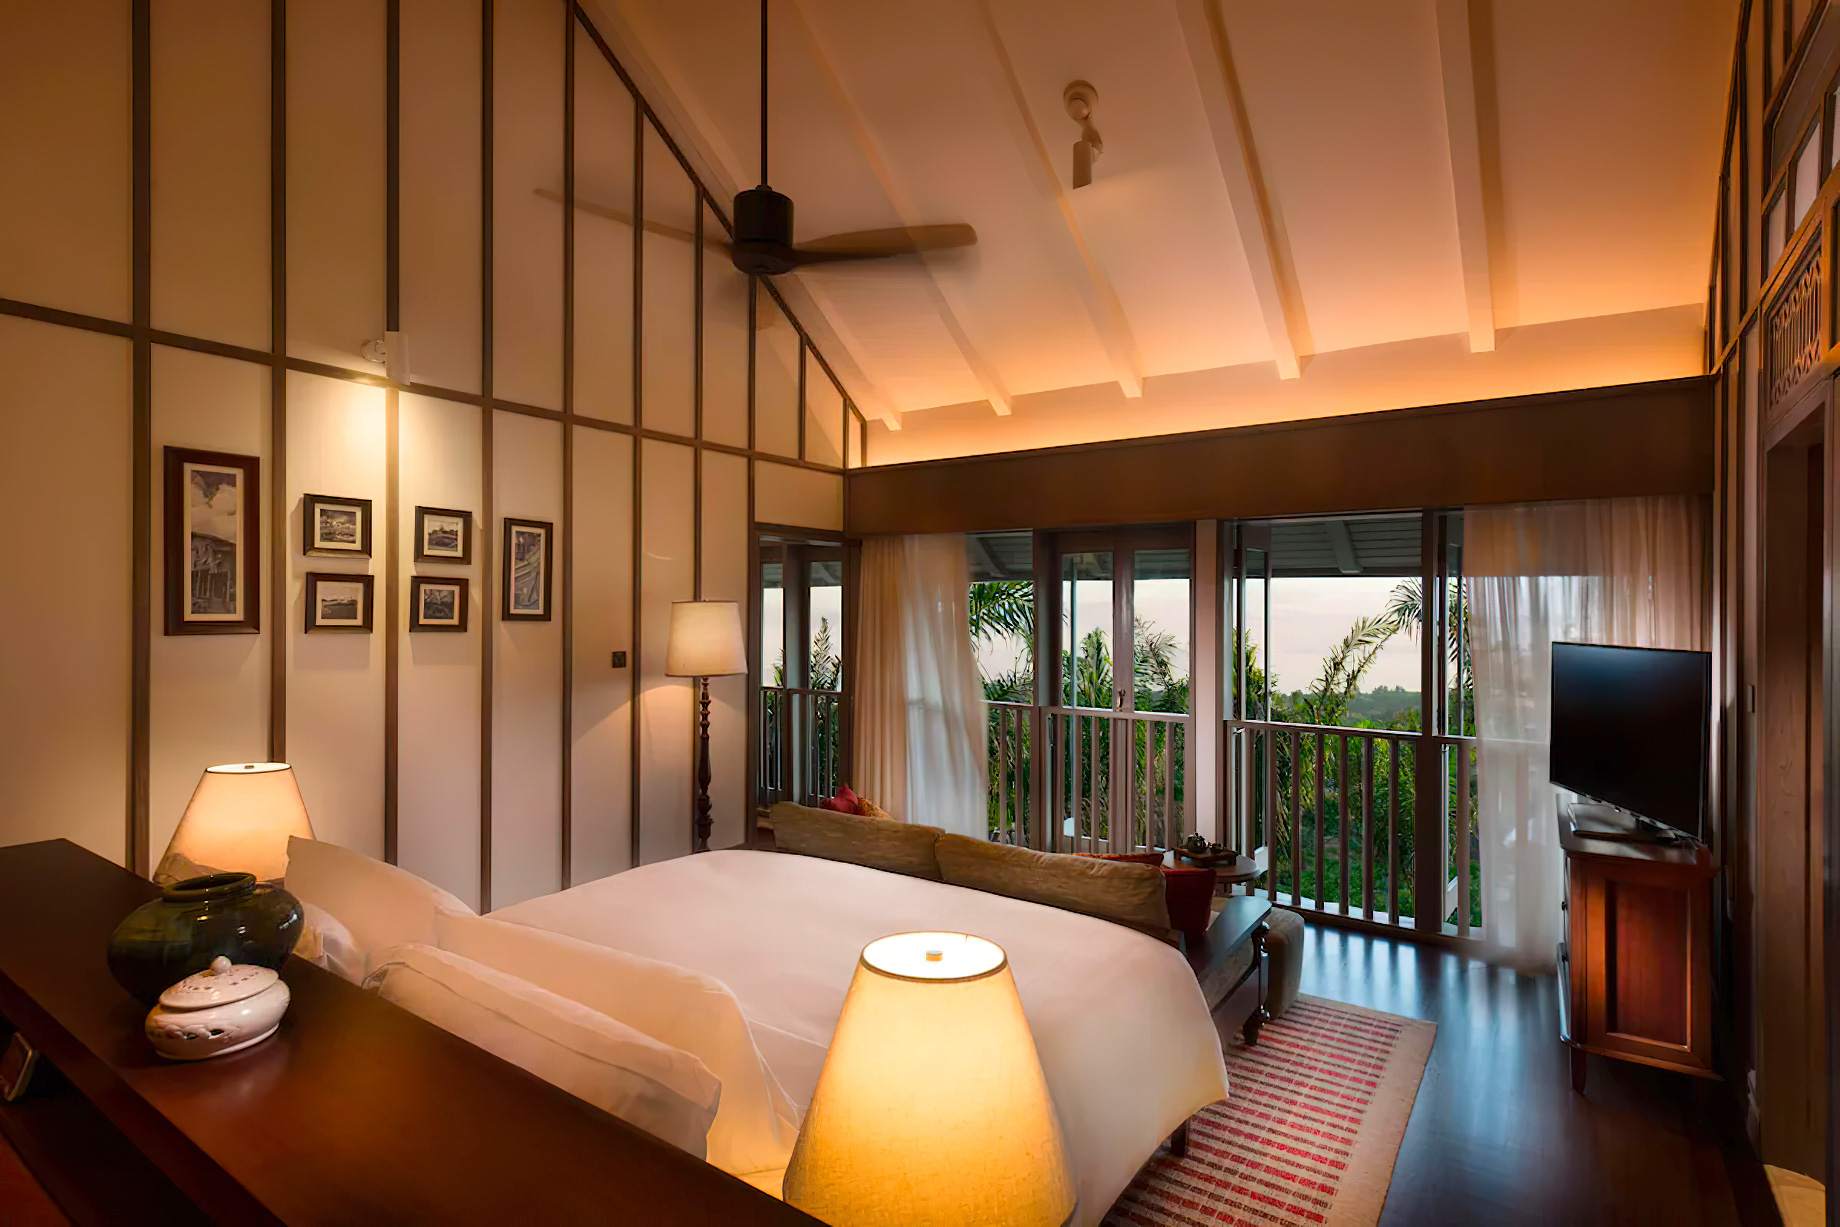 Anantara Desaru Coast Resort & Villas – Johor, Malaysia – One Bedroom Lagoon Pool Villa Bedroom View